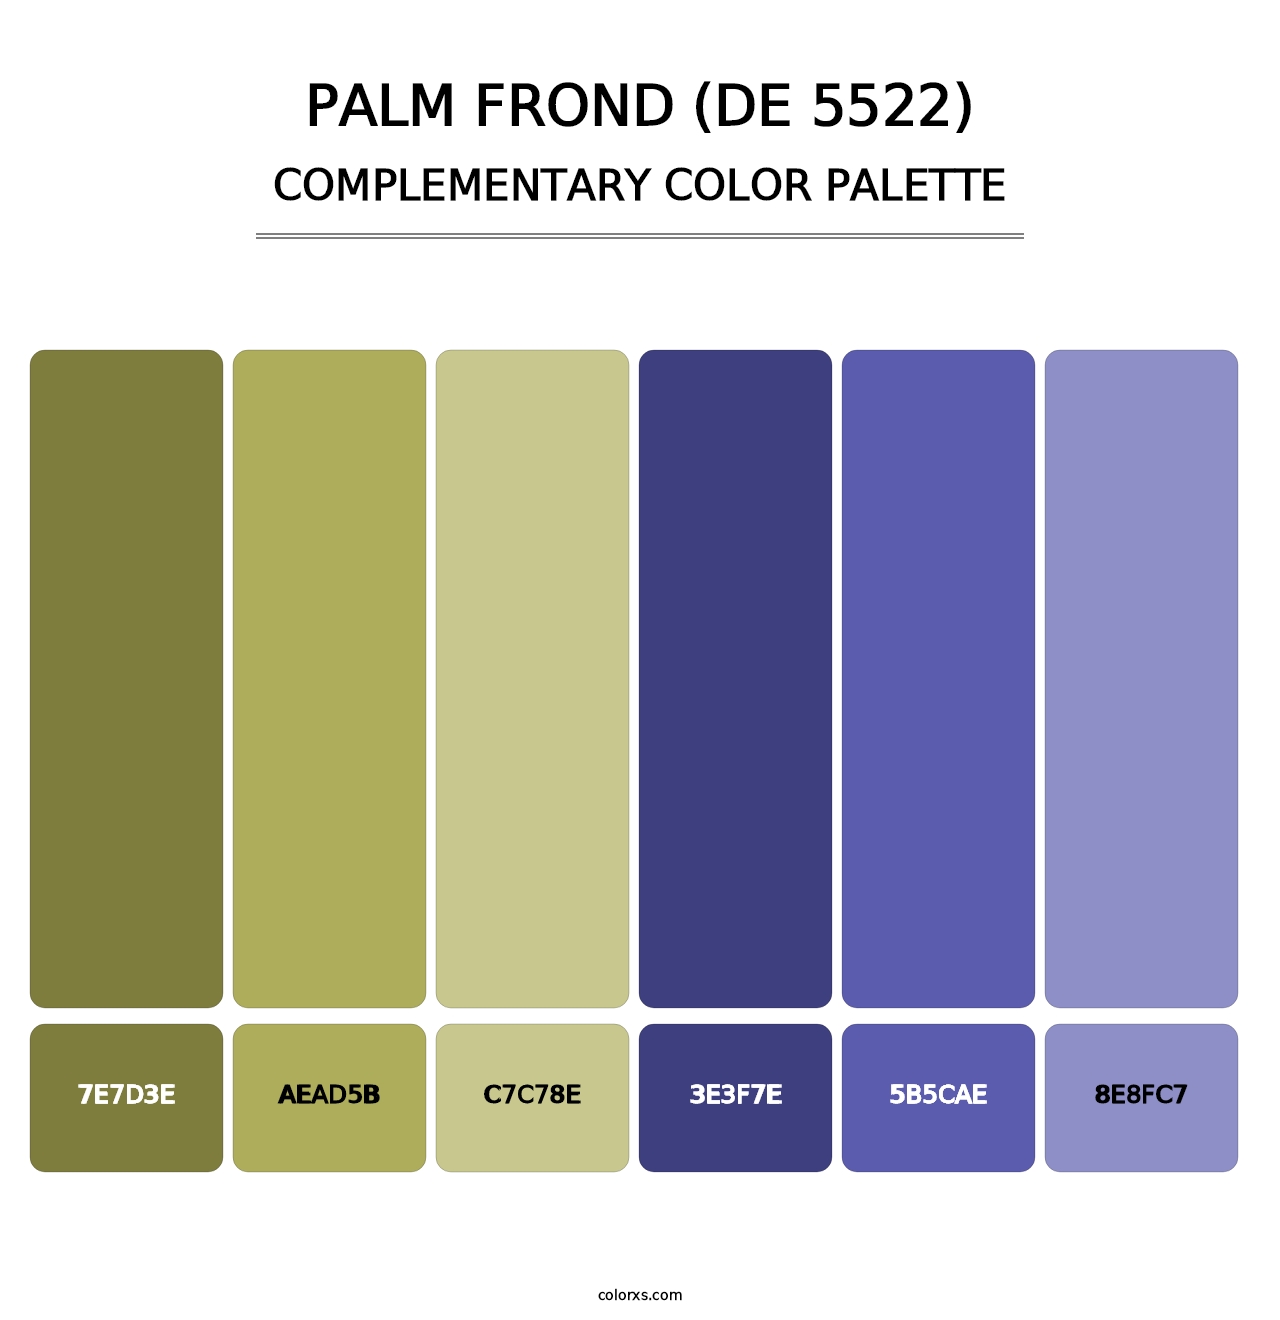 Palm Frond (DE 5522) - Complementary Color Palette